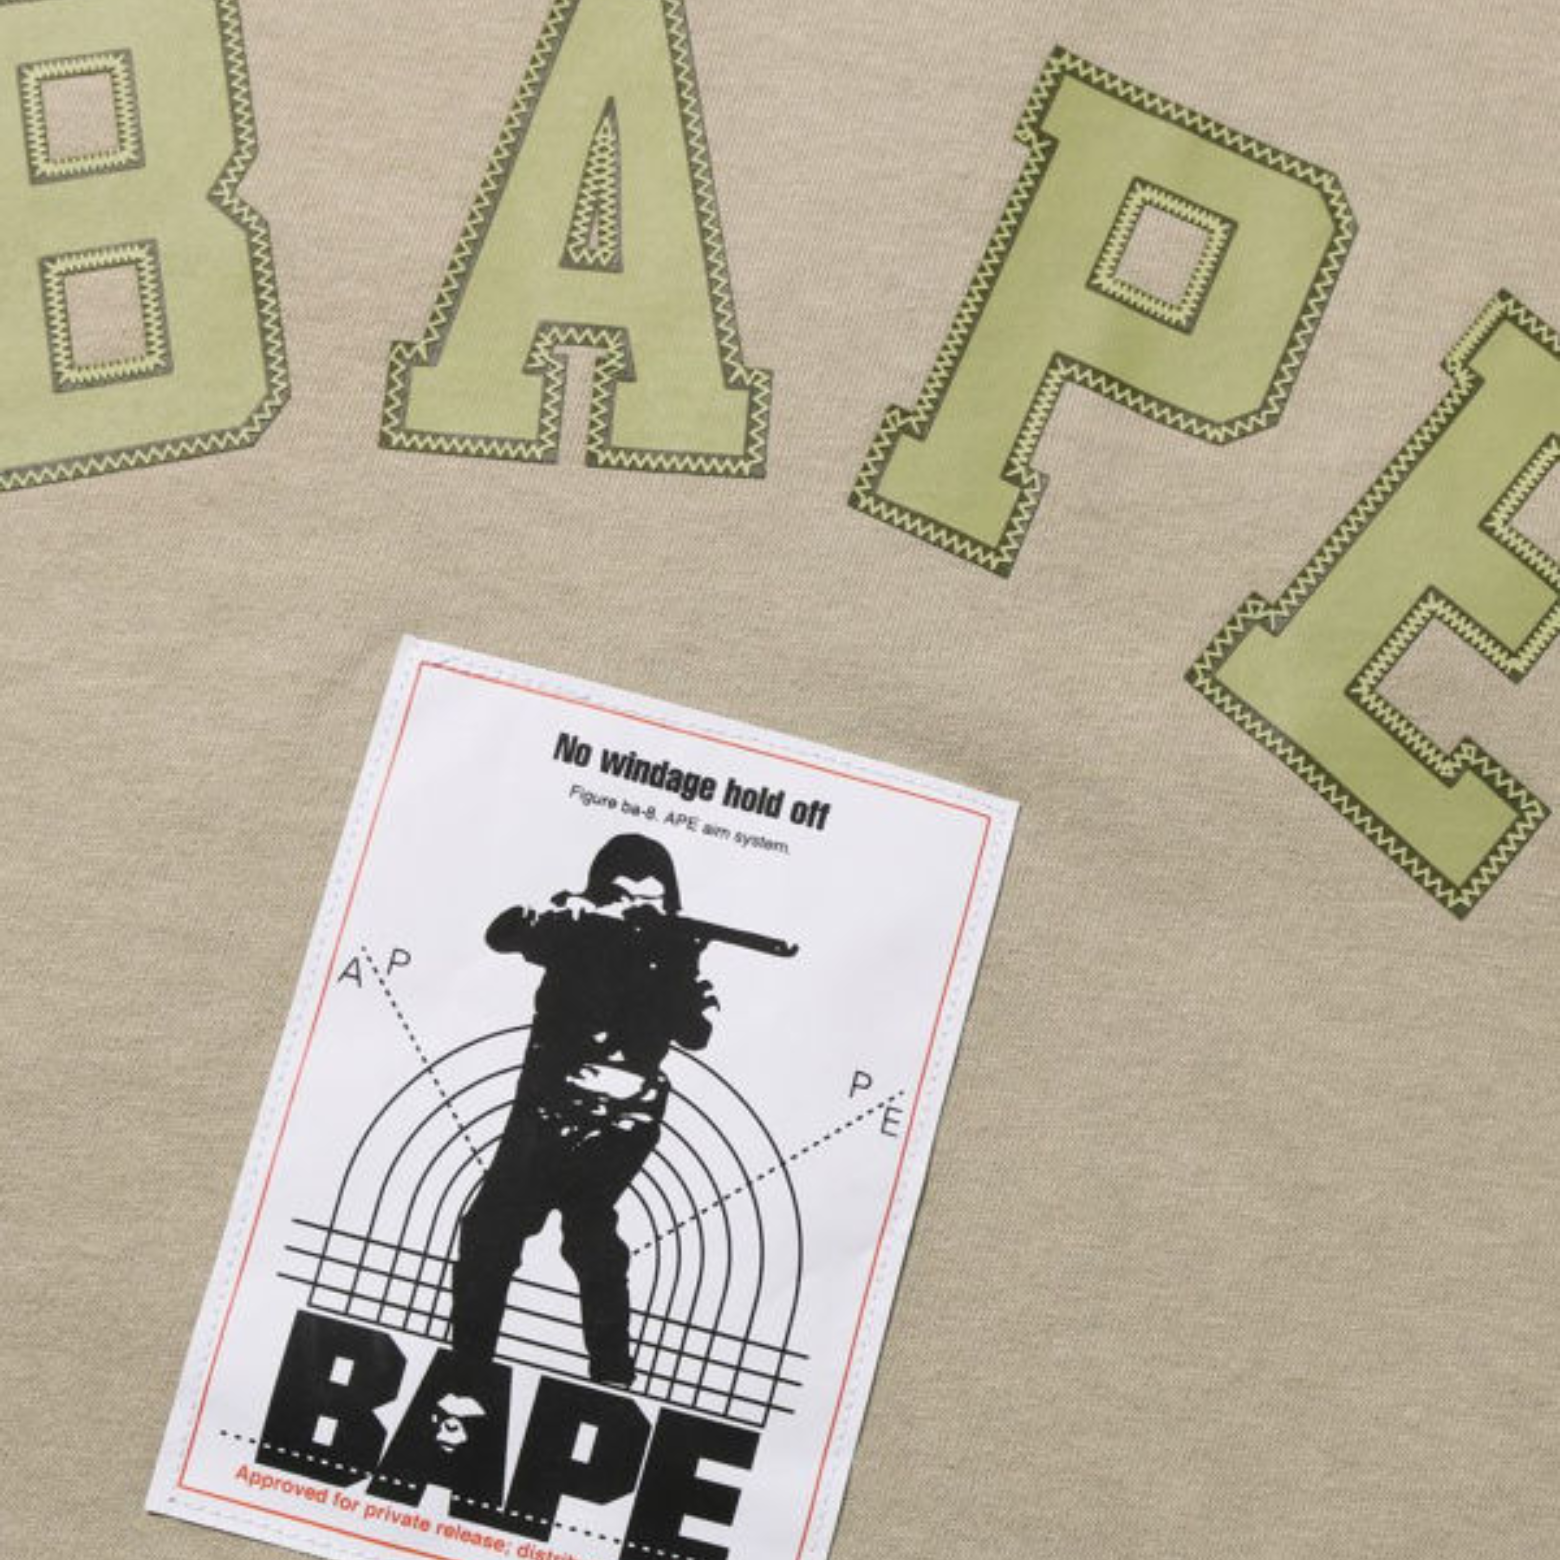 BAPE Multi Label - Maglietta L/S dal taglio rilassato